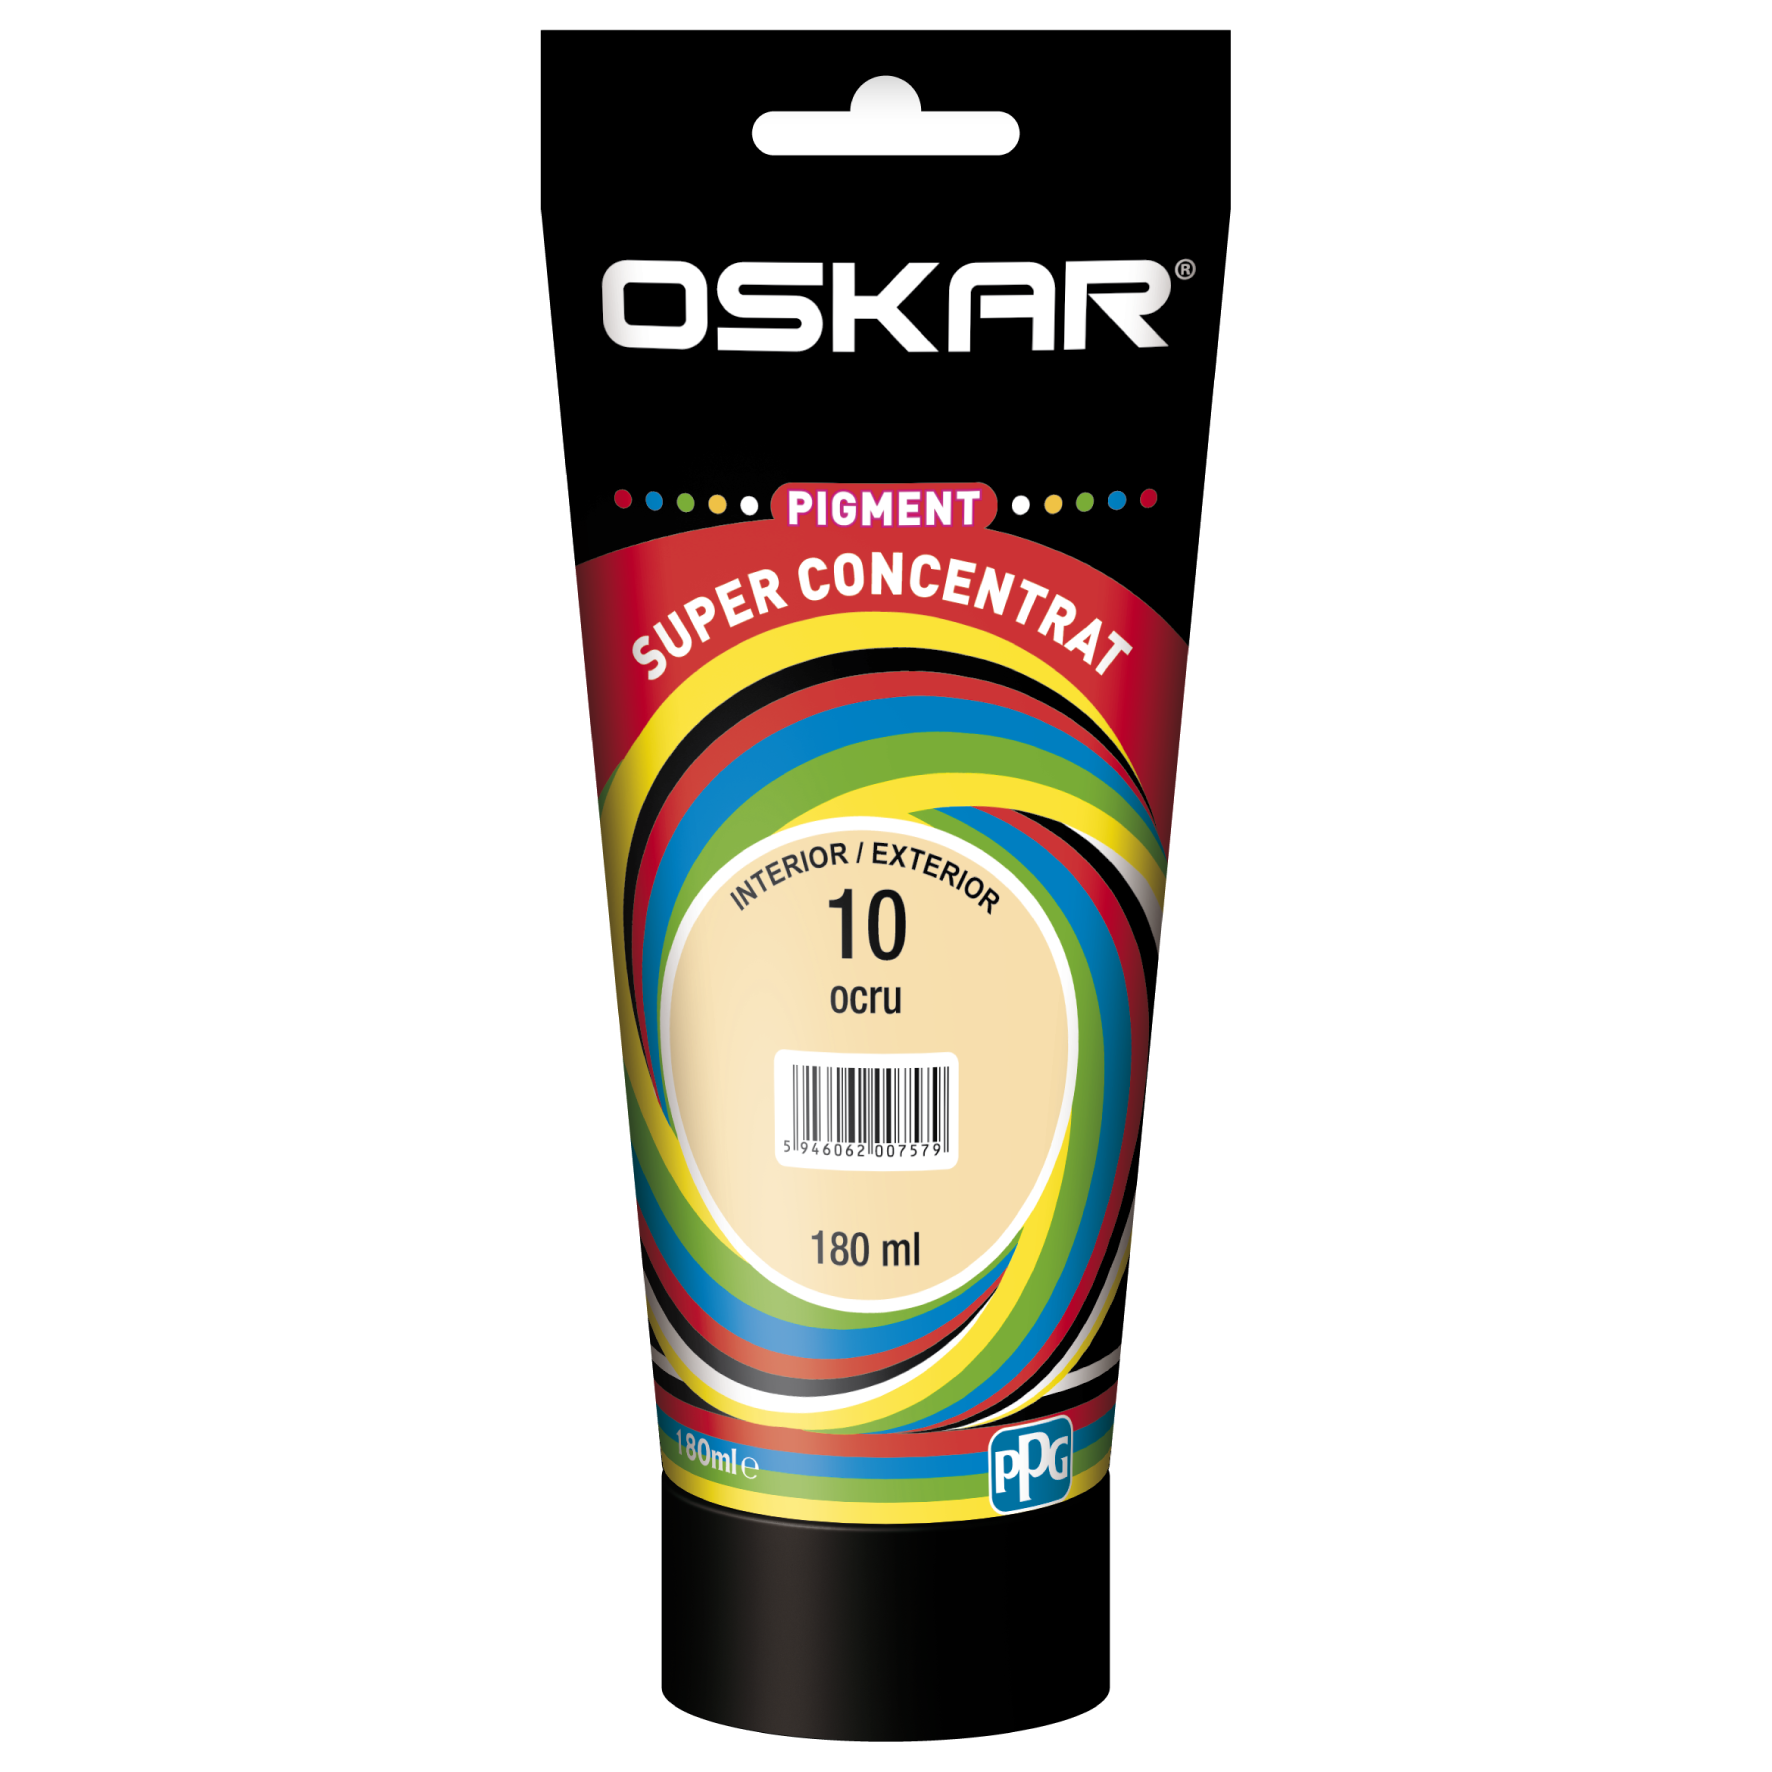 Pigment vopsea lavabila Oskar super concentrat, ocru 10, 180 ml 10